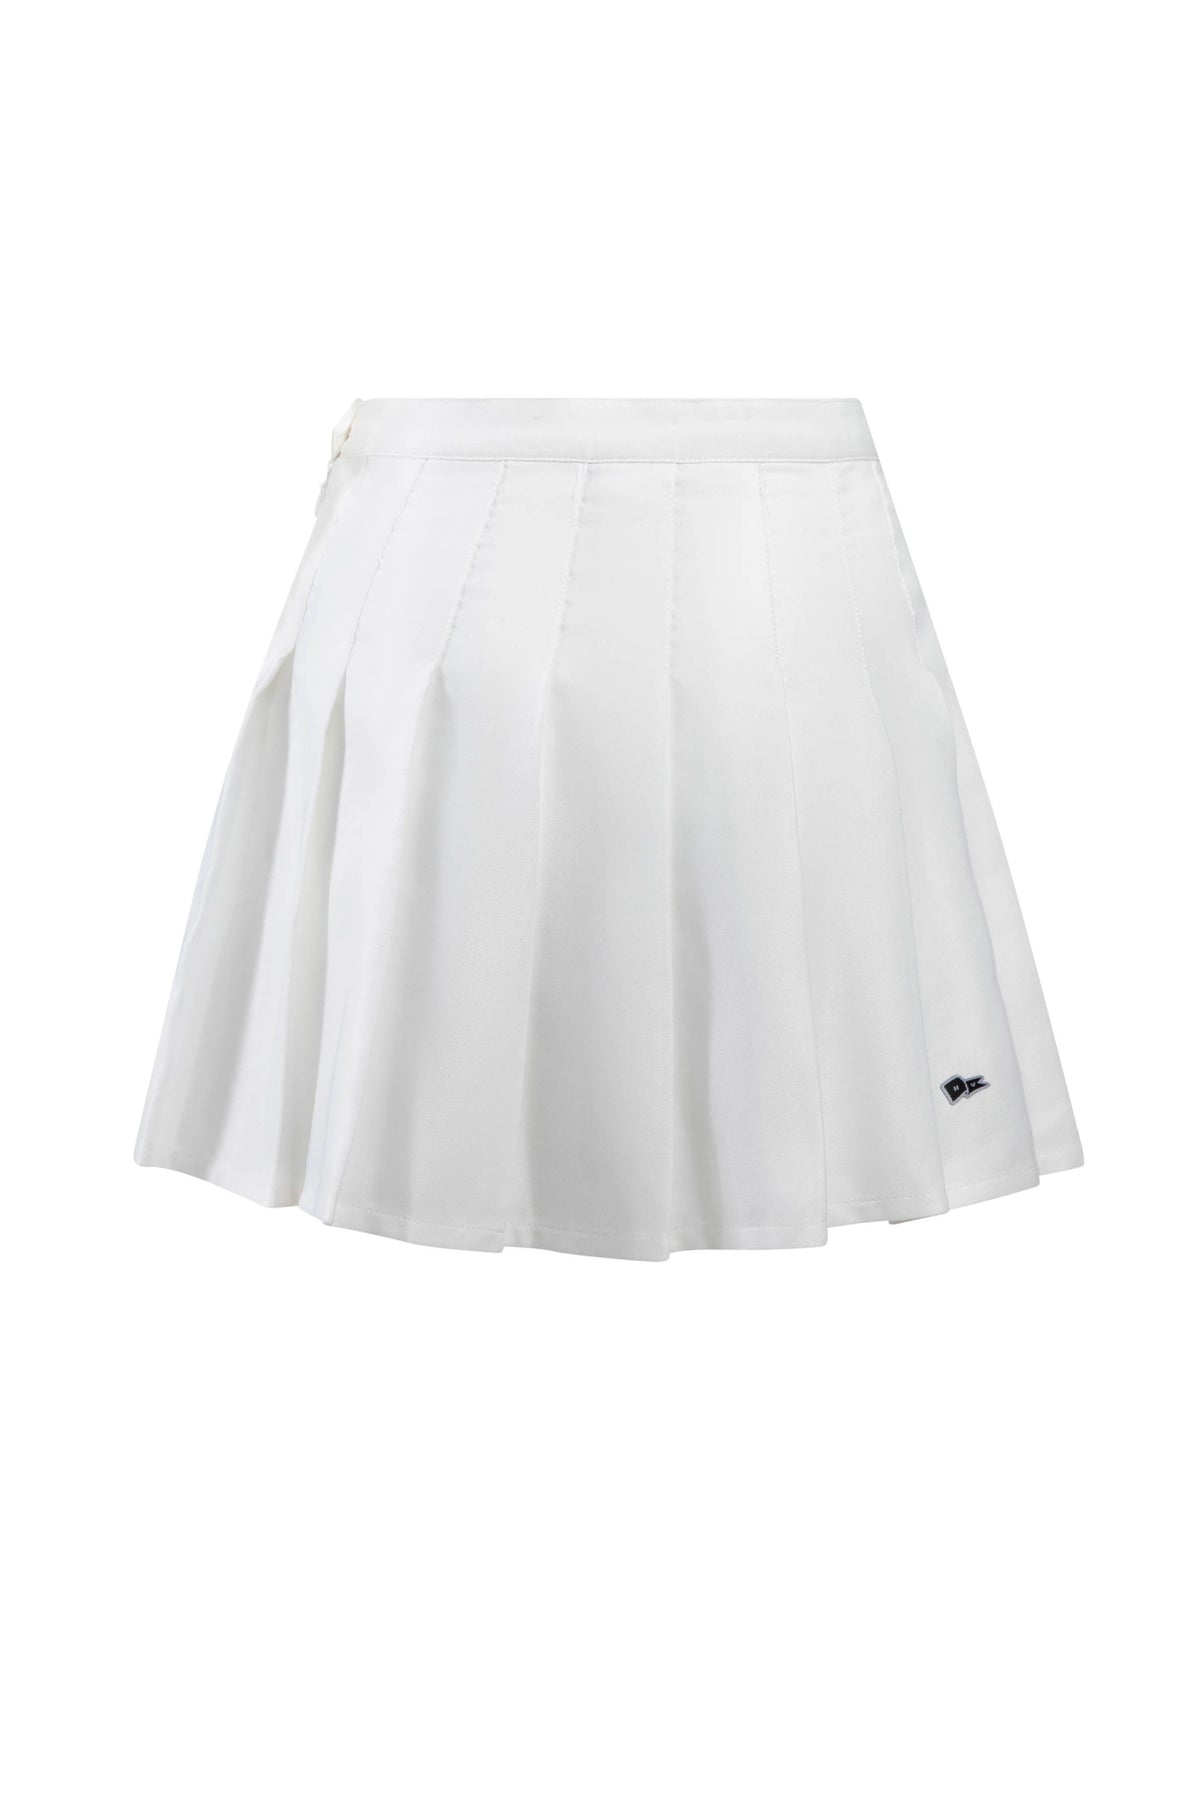 Belmont University Tennis Skirt